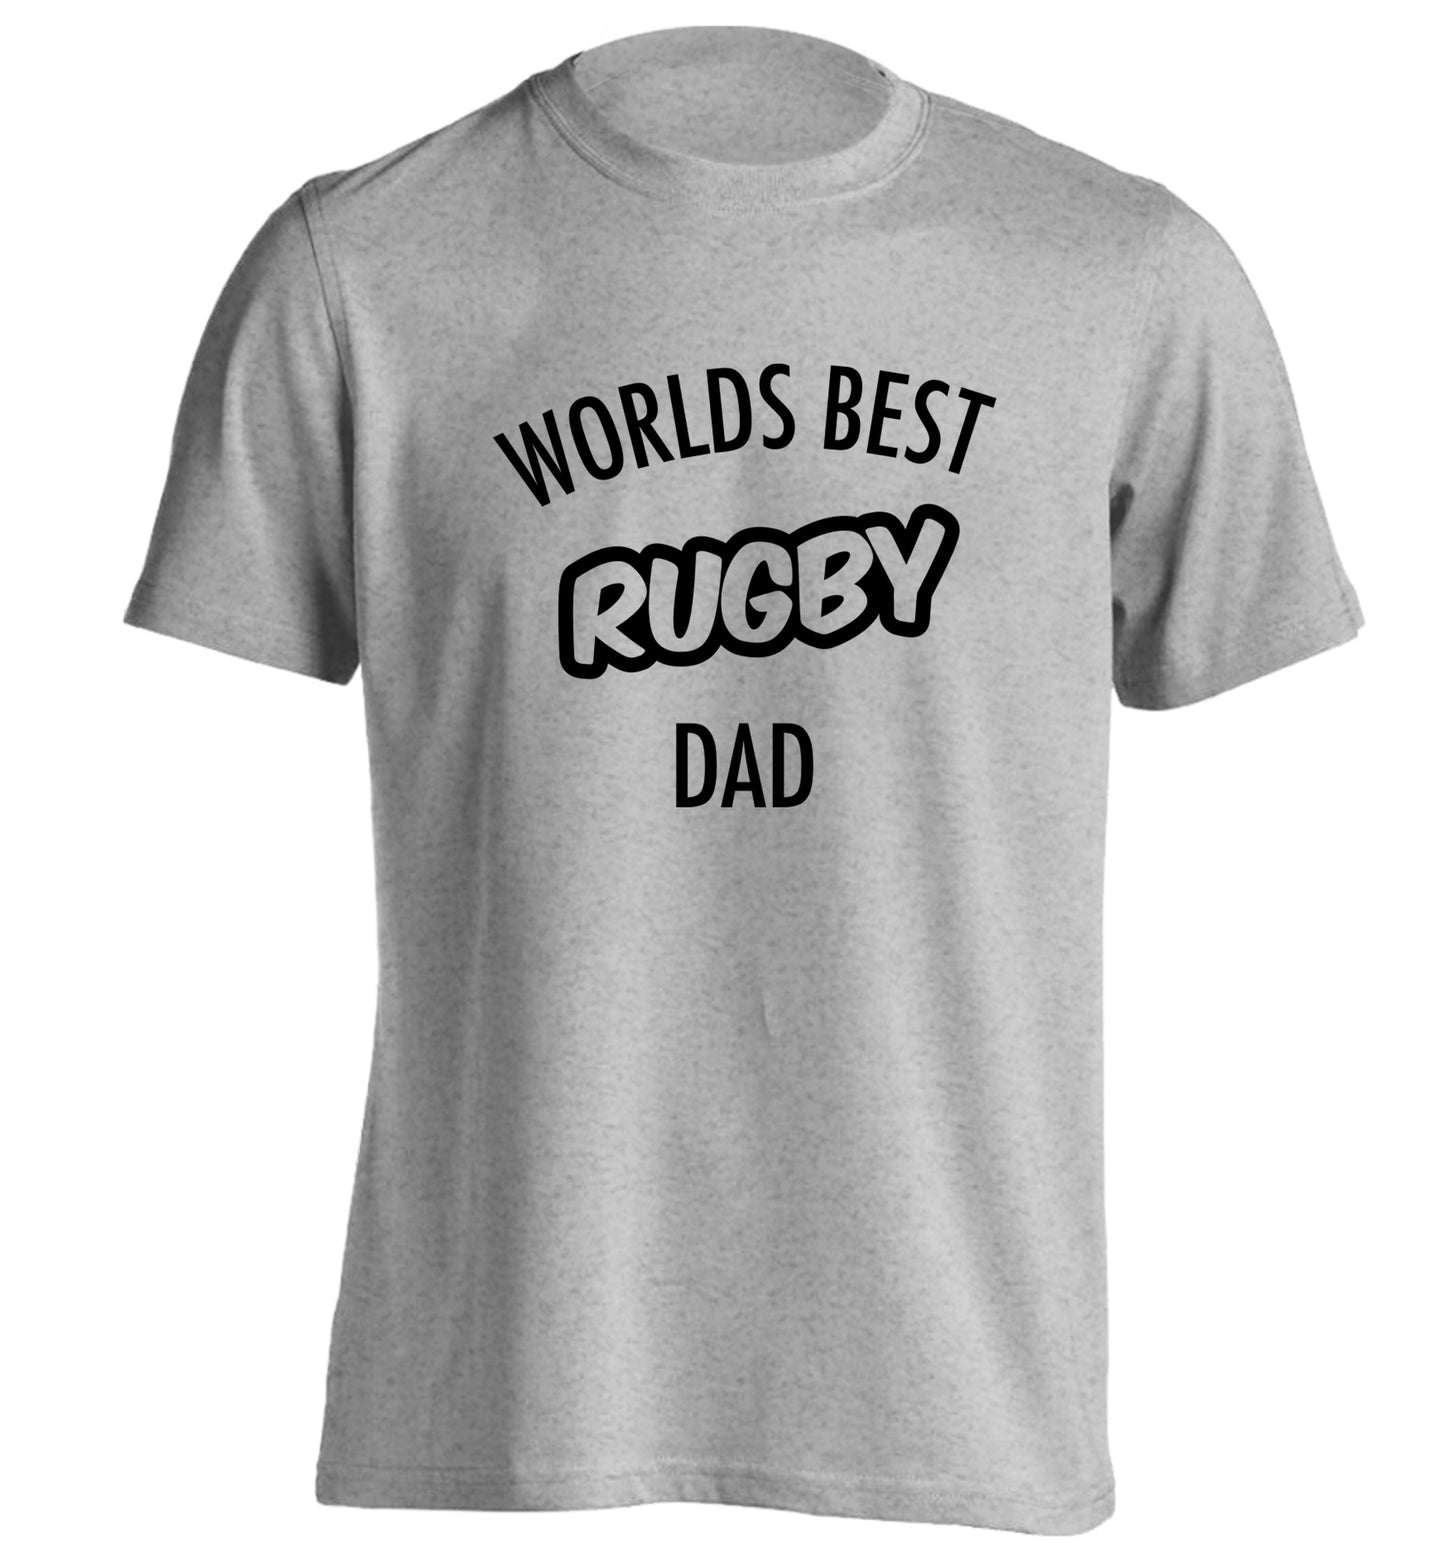 Worlds best rugby dad adults unisex grey Tshirt 2XL